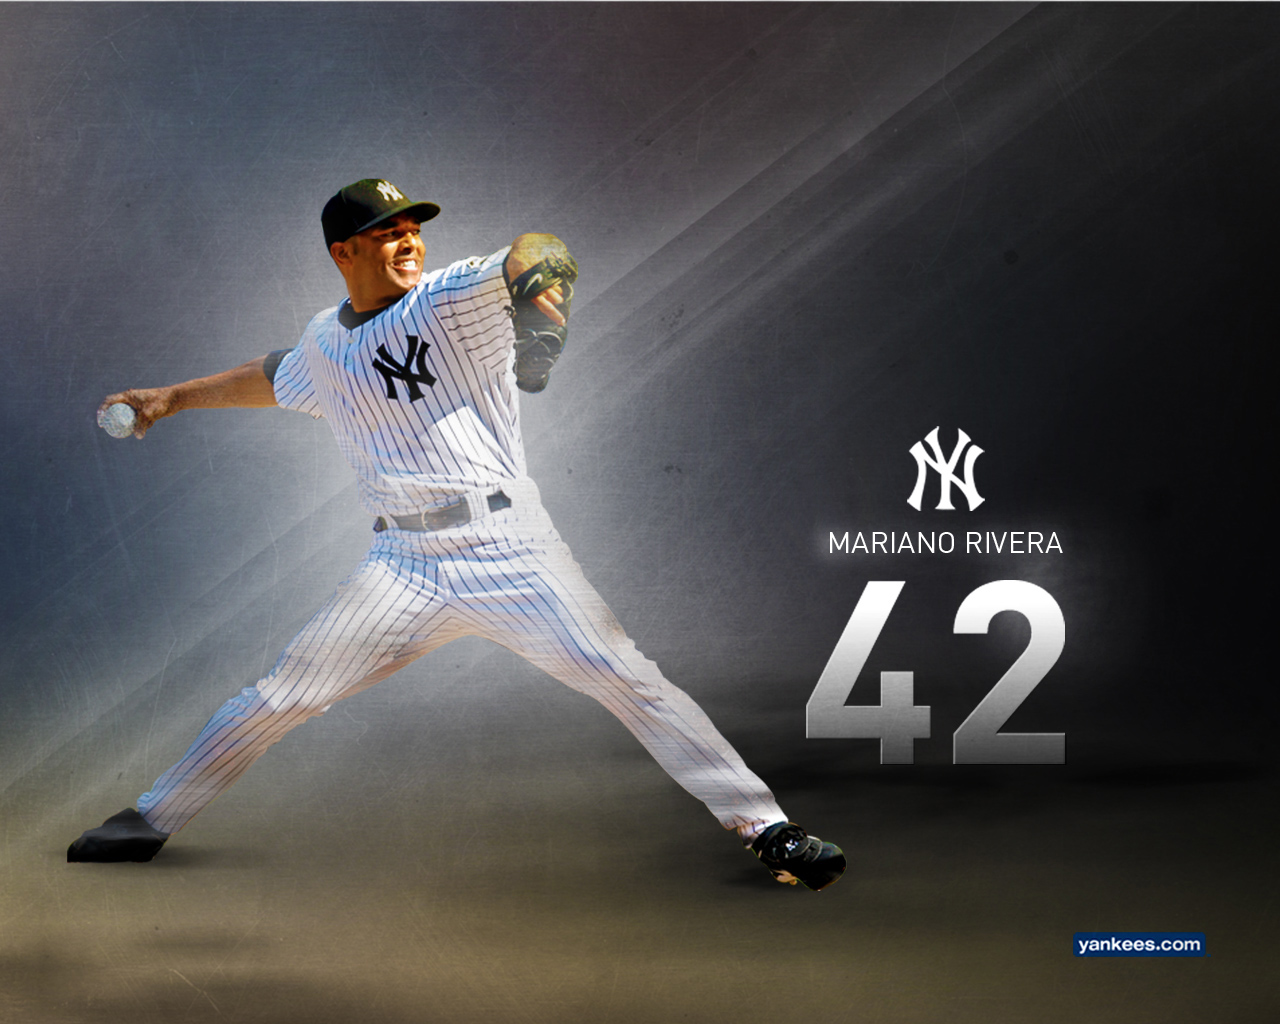 Yankees Wallpaper Image New York